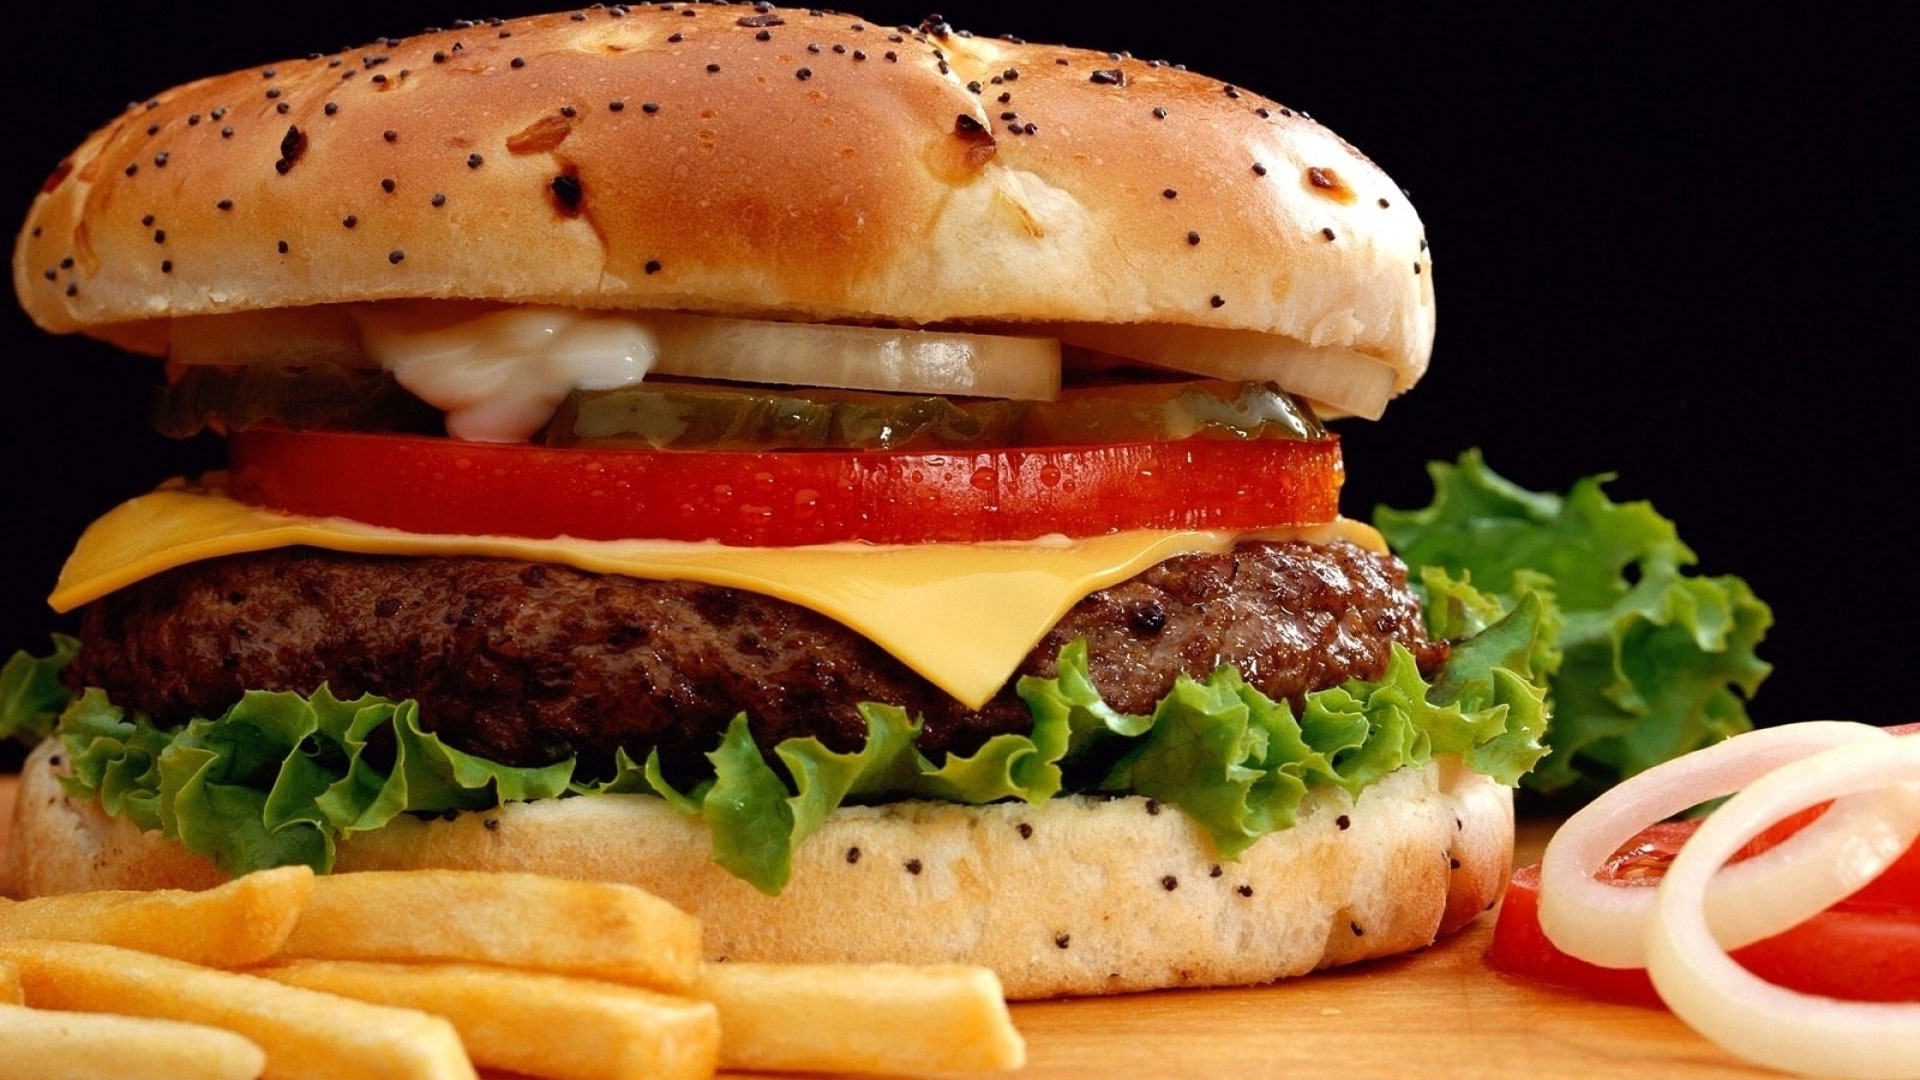 Four Points by Sheraton Puntacana Village anuncia evento gastronómico “Burger Festival”